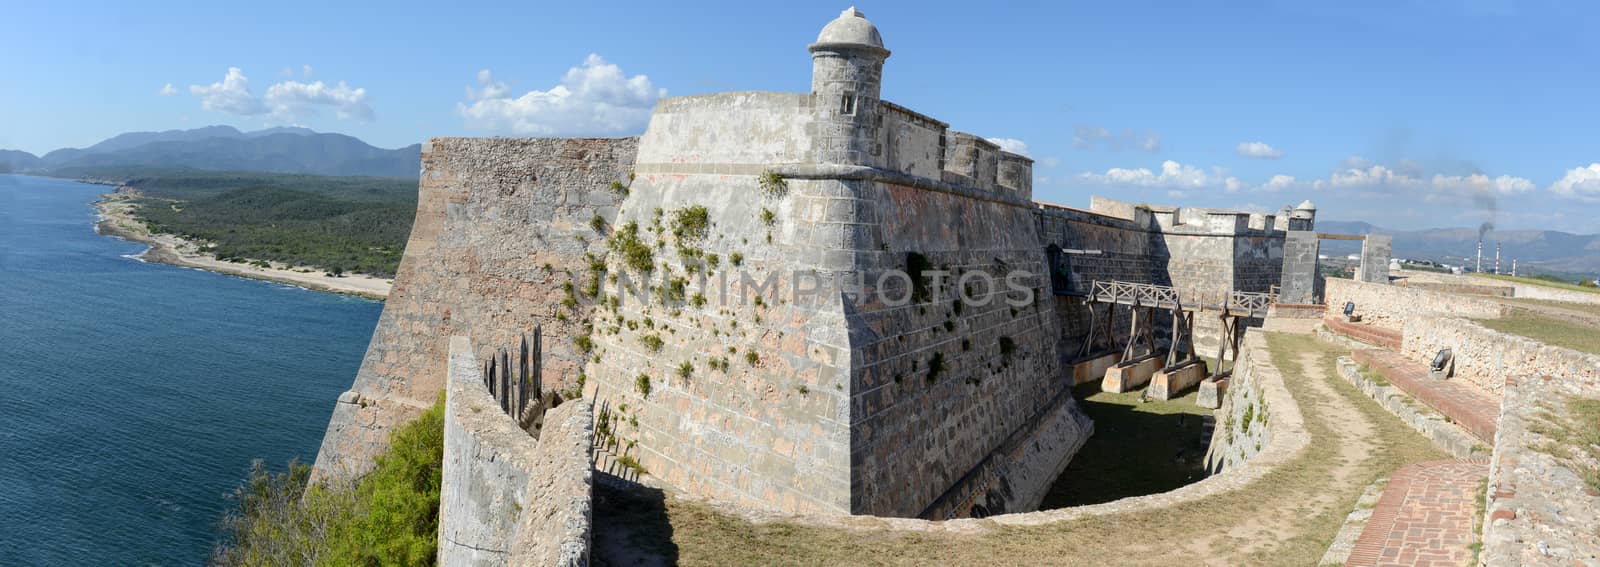 El Morro castle at Santiago de Cuba, Cuba